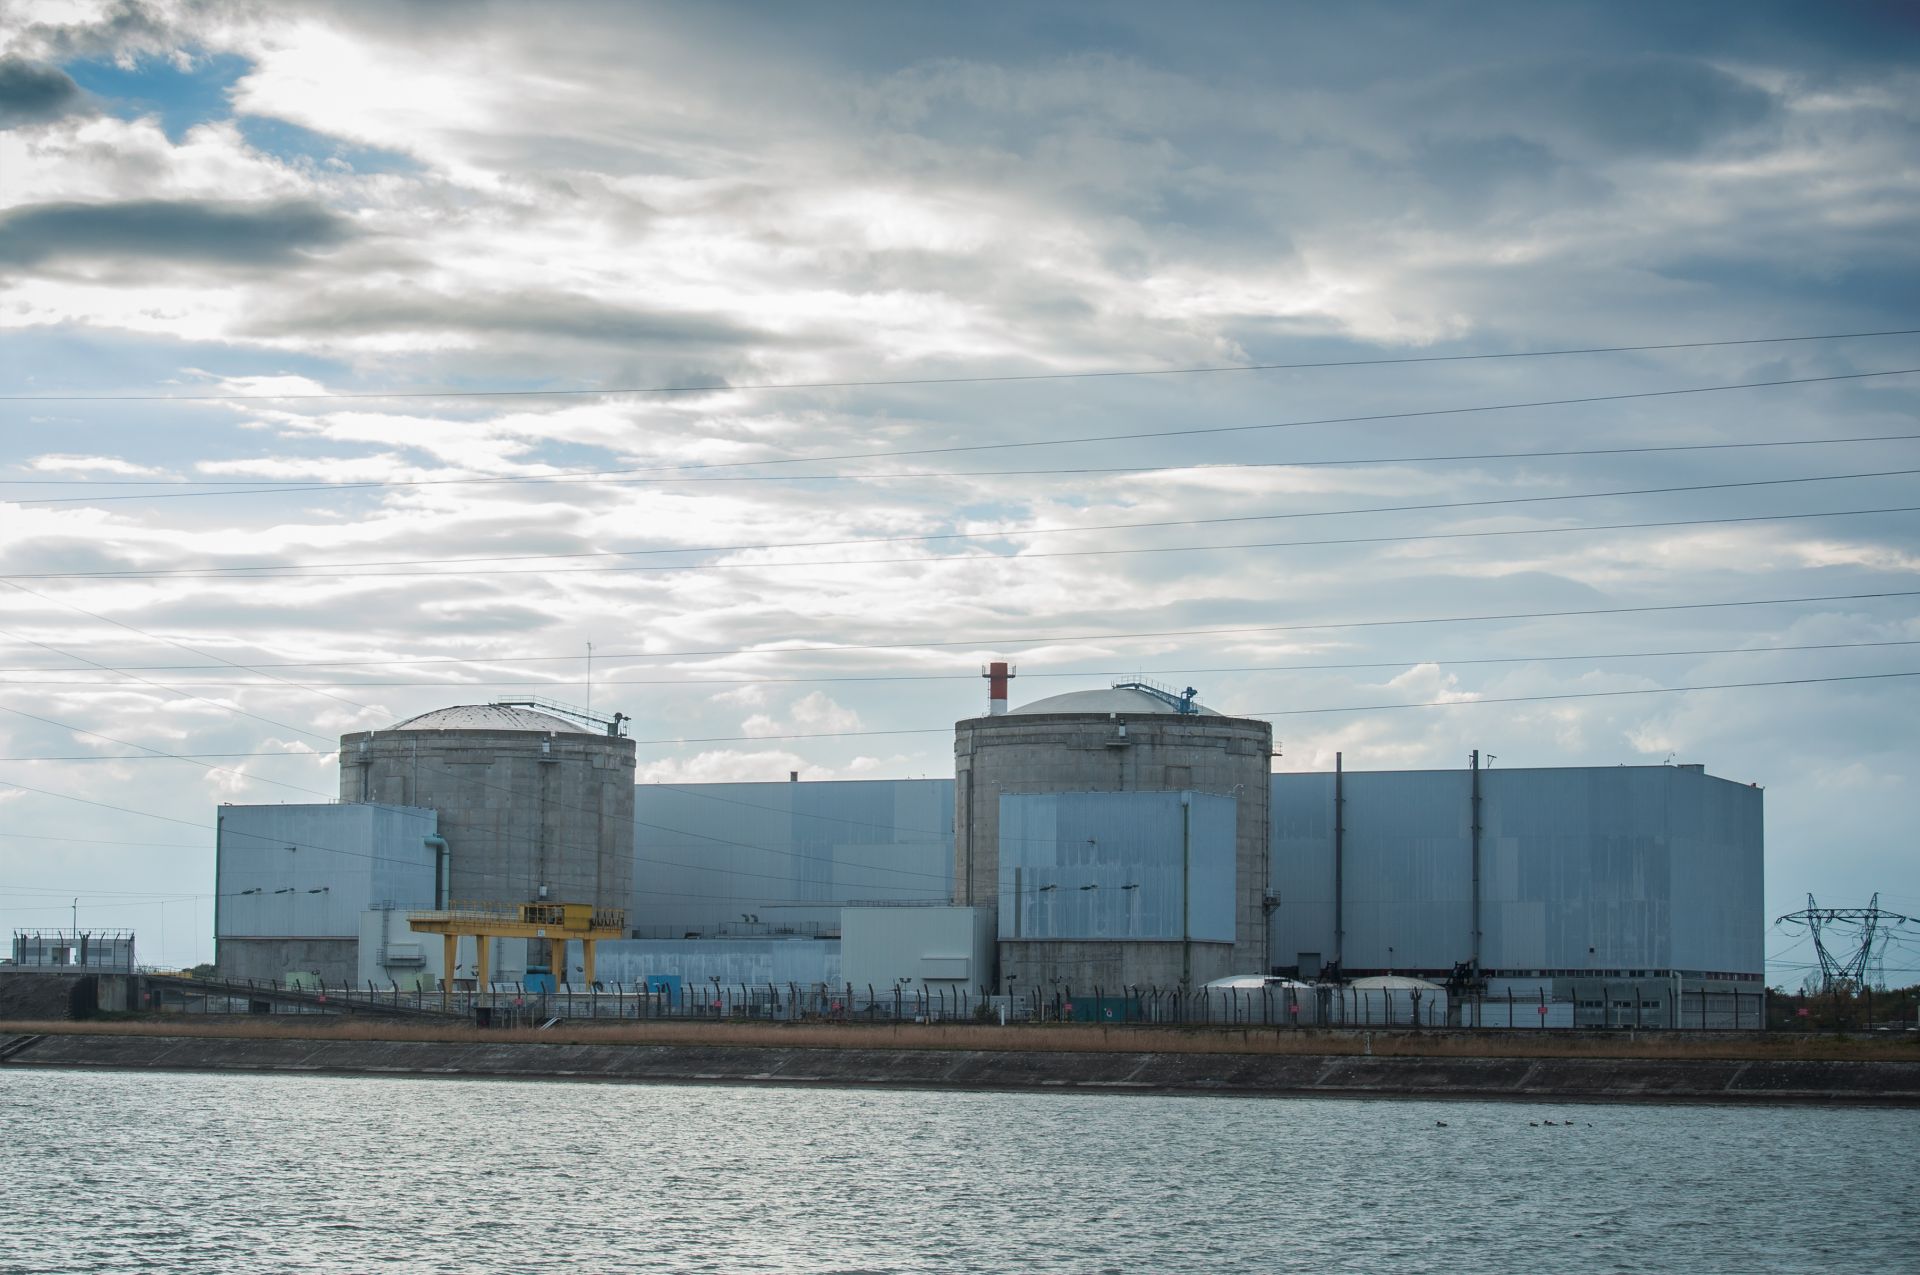 През юни 2020 г. Франция затвори и втория 900-мегаватов ядрен реактор от най-старата си ядрена централа във Фесенхайм. Първият - също 900 мегавата, бе спрян през февруари същата година